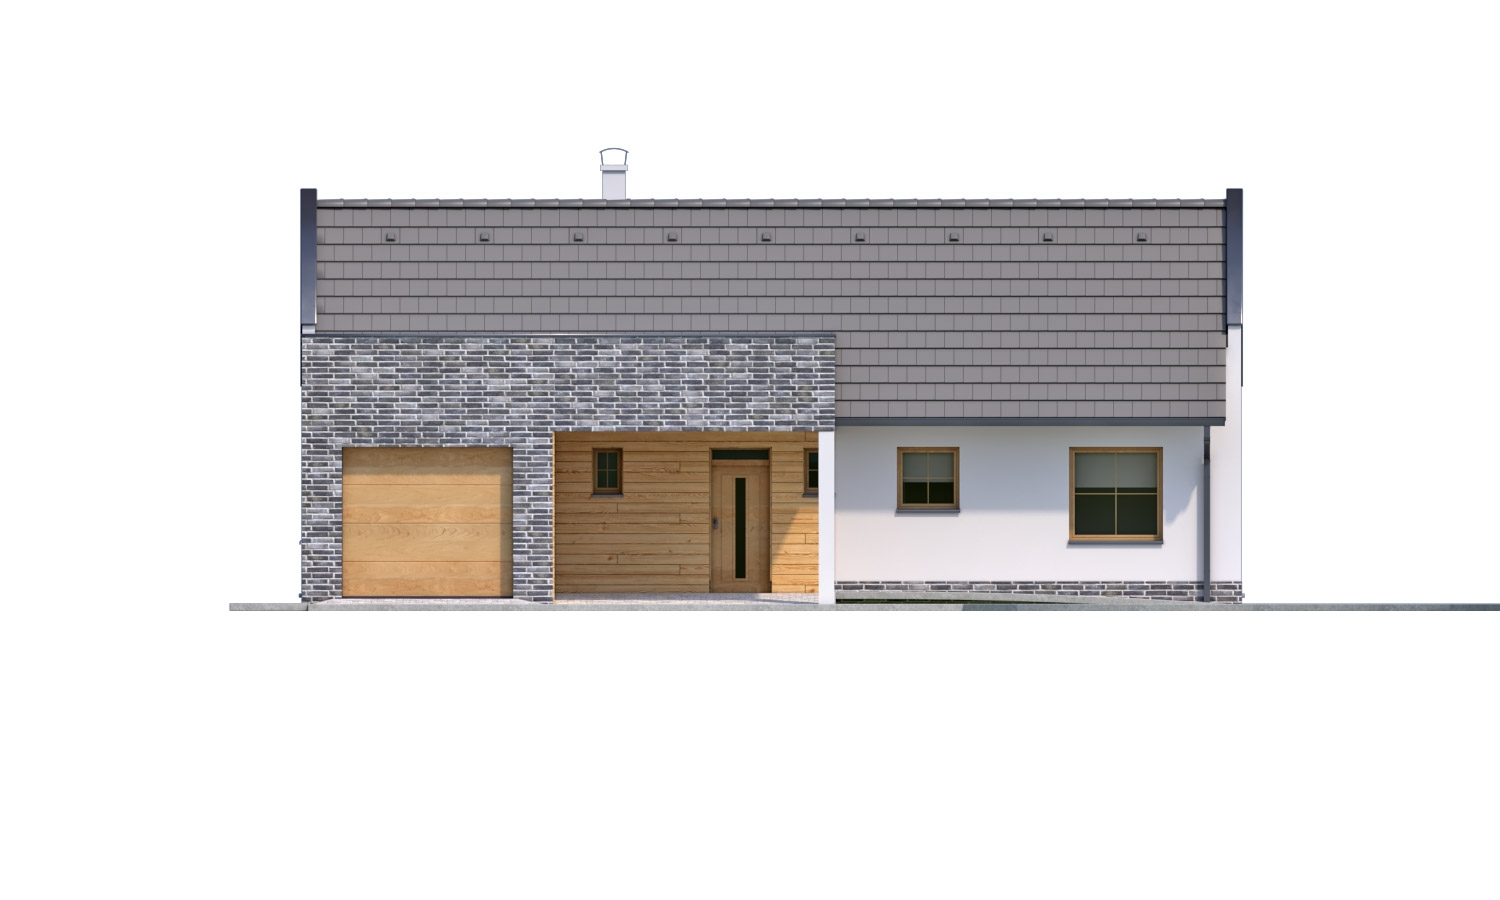 Pohľad 1. - Moderní rodinný dům s garáží pro 4 až 5 člennou rodinku. Možnost změnit tvar střechy, případně realizovat dům bez garáže. Vhodný i jako dvojdům.